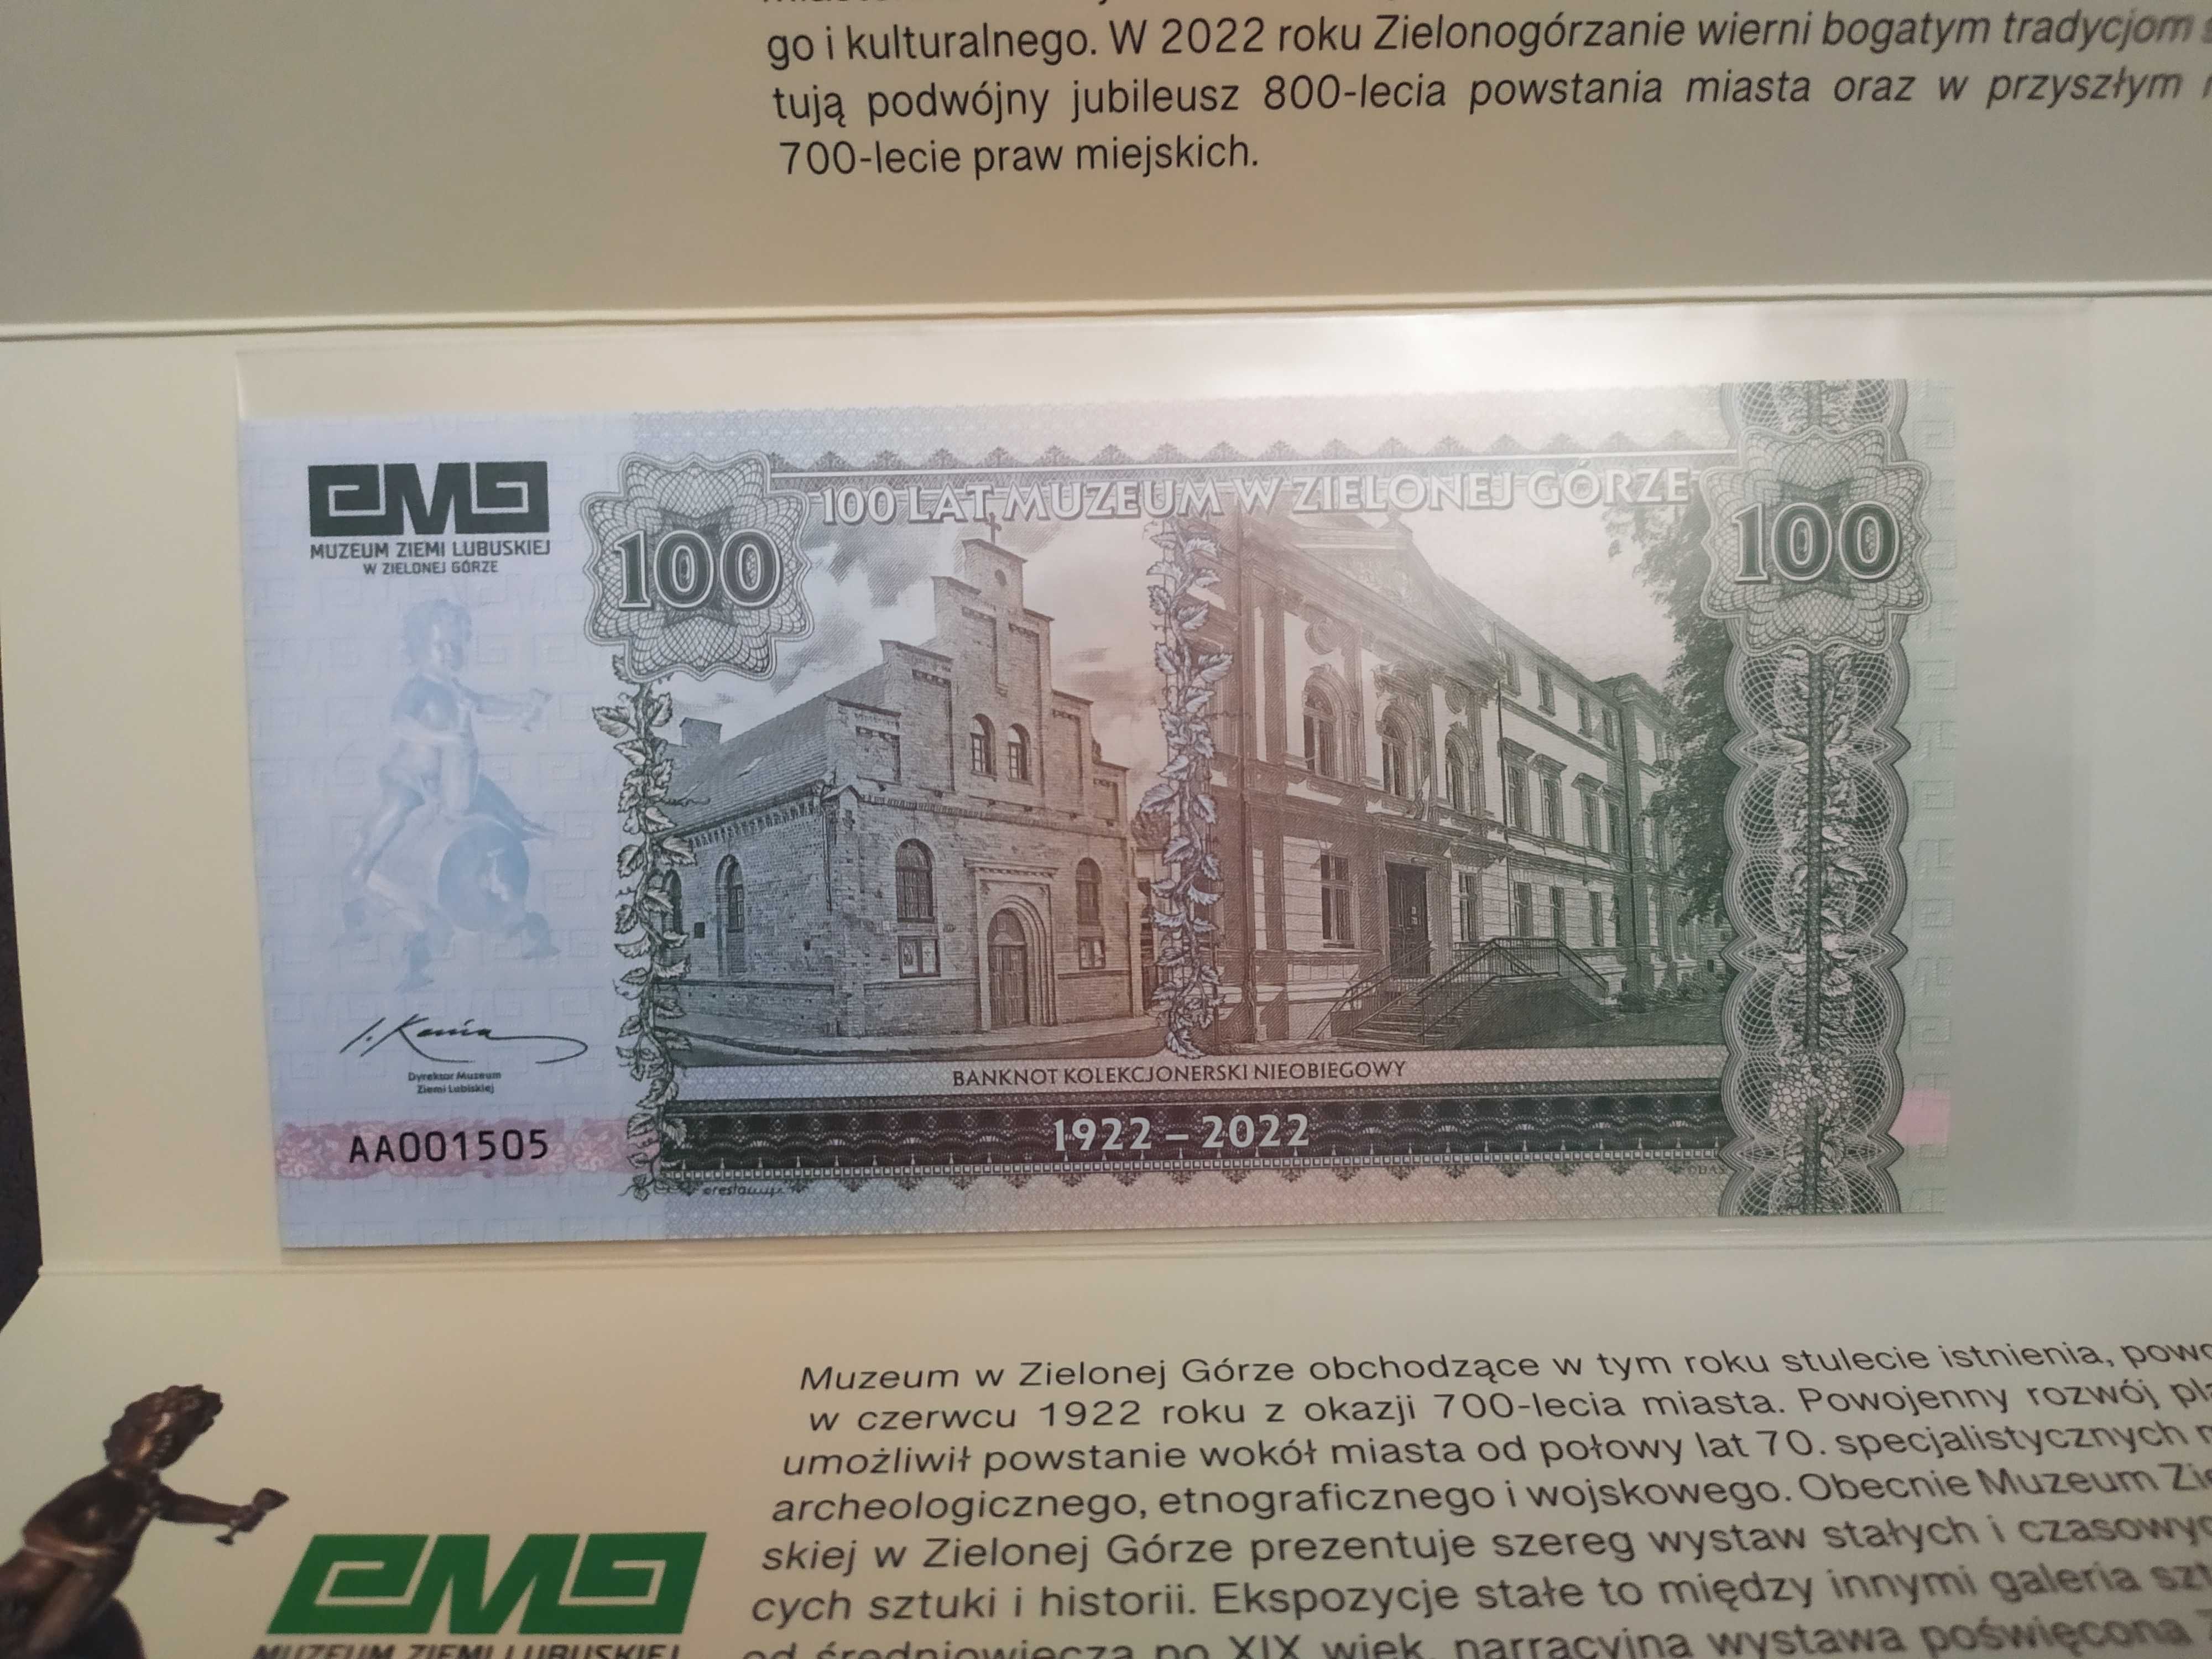 100 lat Muzeum w Zielonej Górze - banknot kolekcjonerski